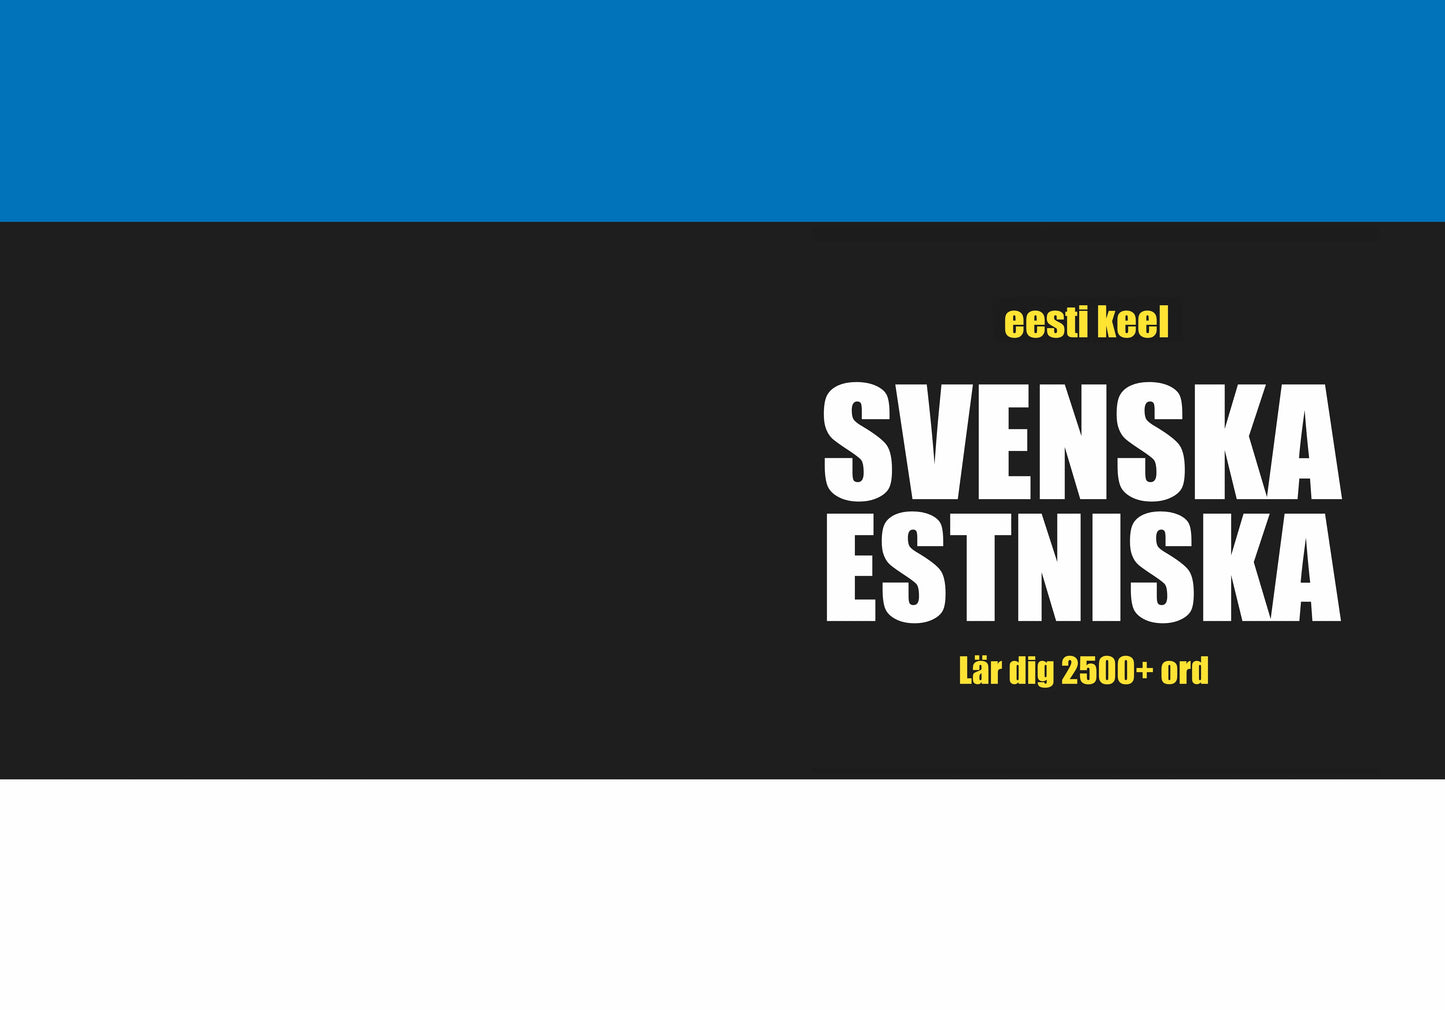 Svenska-estniska anteckningsbok att fylla i